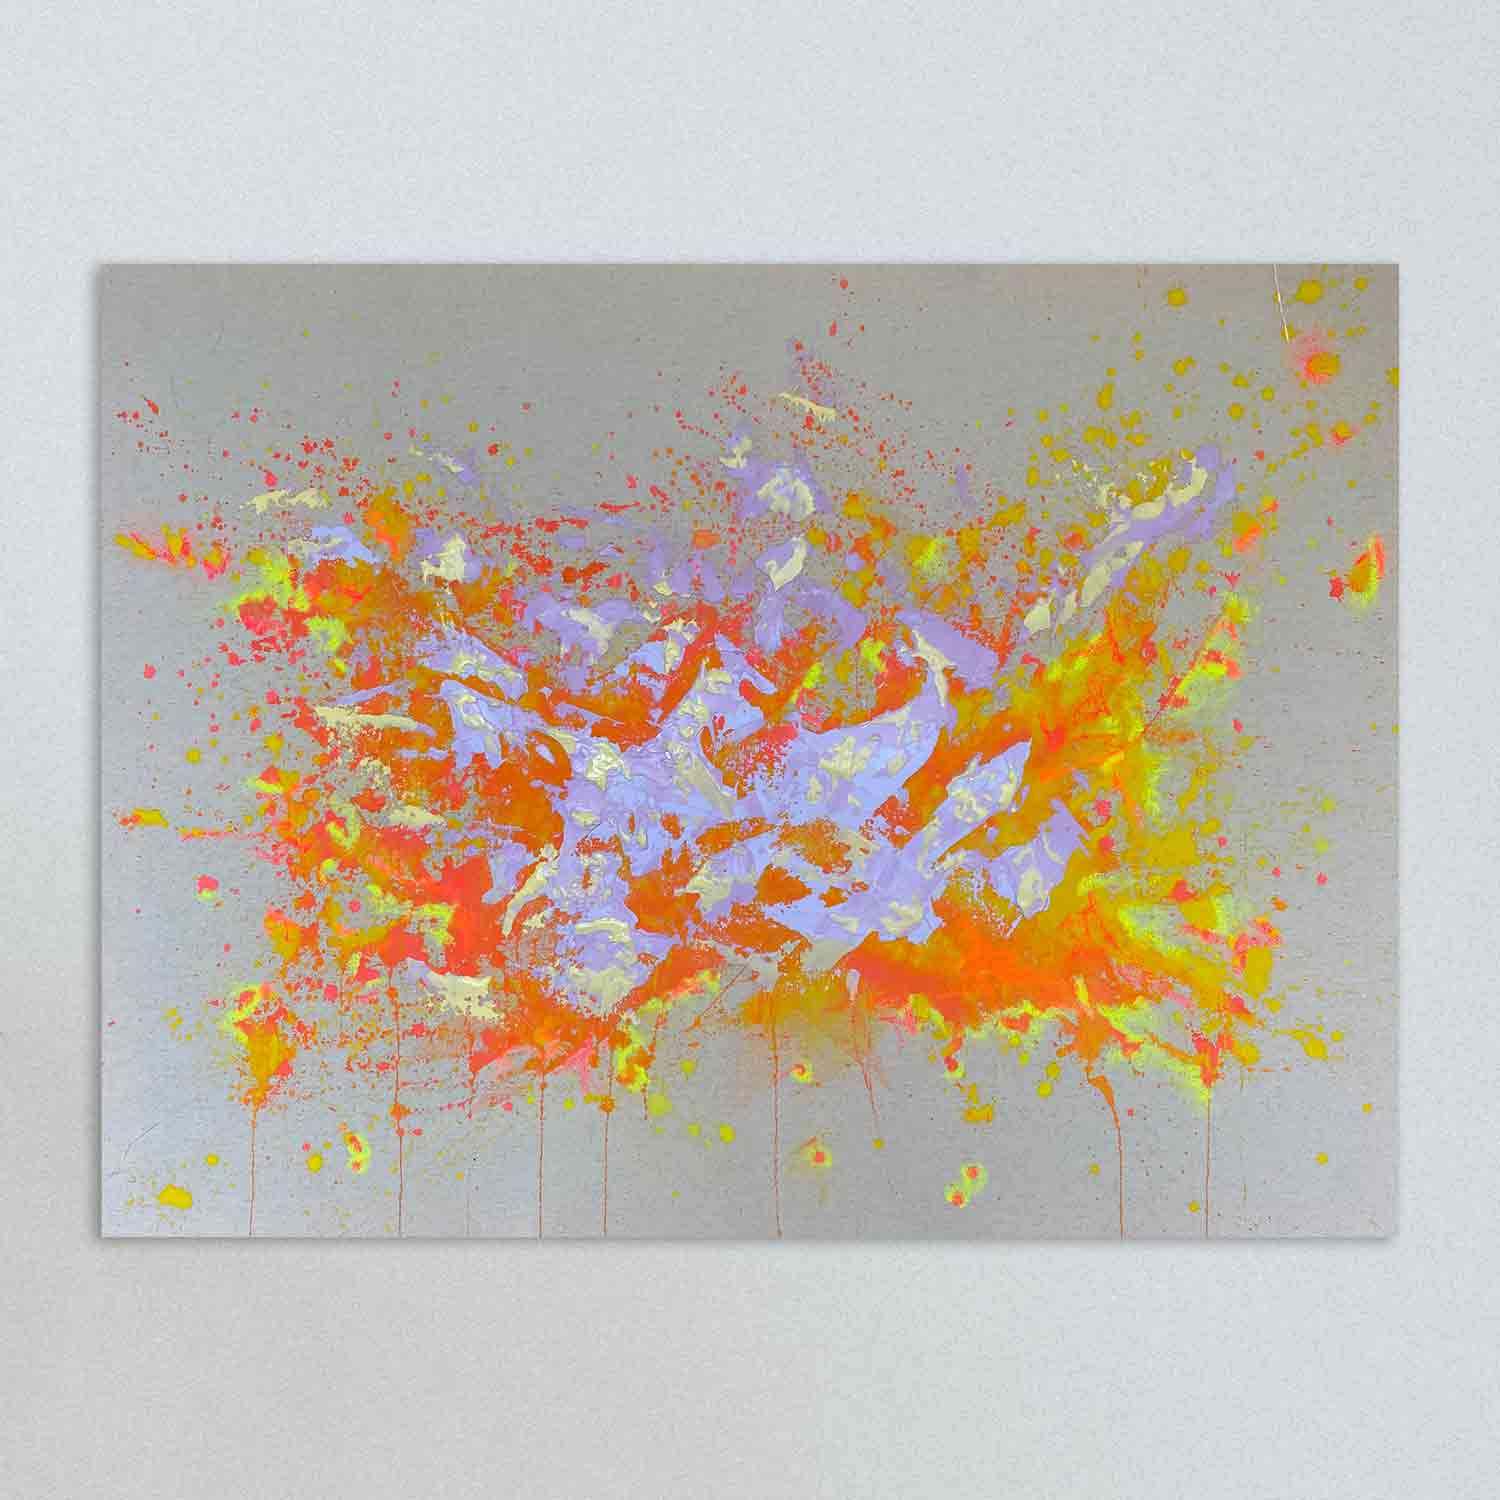 SISTERS - abstrakt gemaltes Leinweandbild. Naturfarbener Hintergrund mit leuchtend orange und gelbfarbenen Highlights. Abgerundert wird das Bild durch zartglänzende Lilafarbene Akzente.